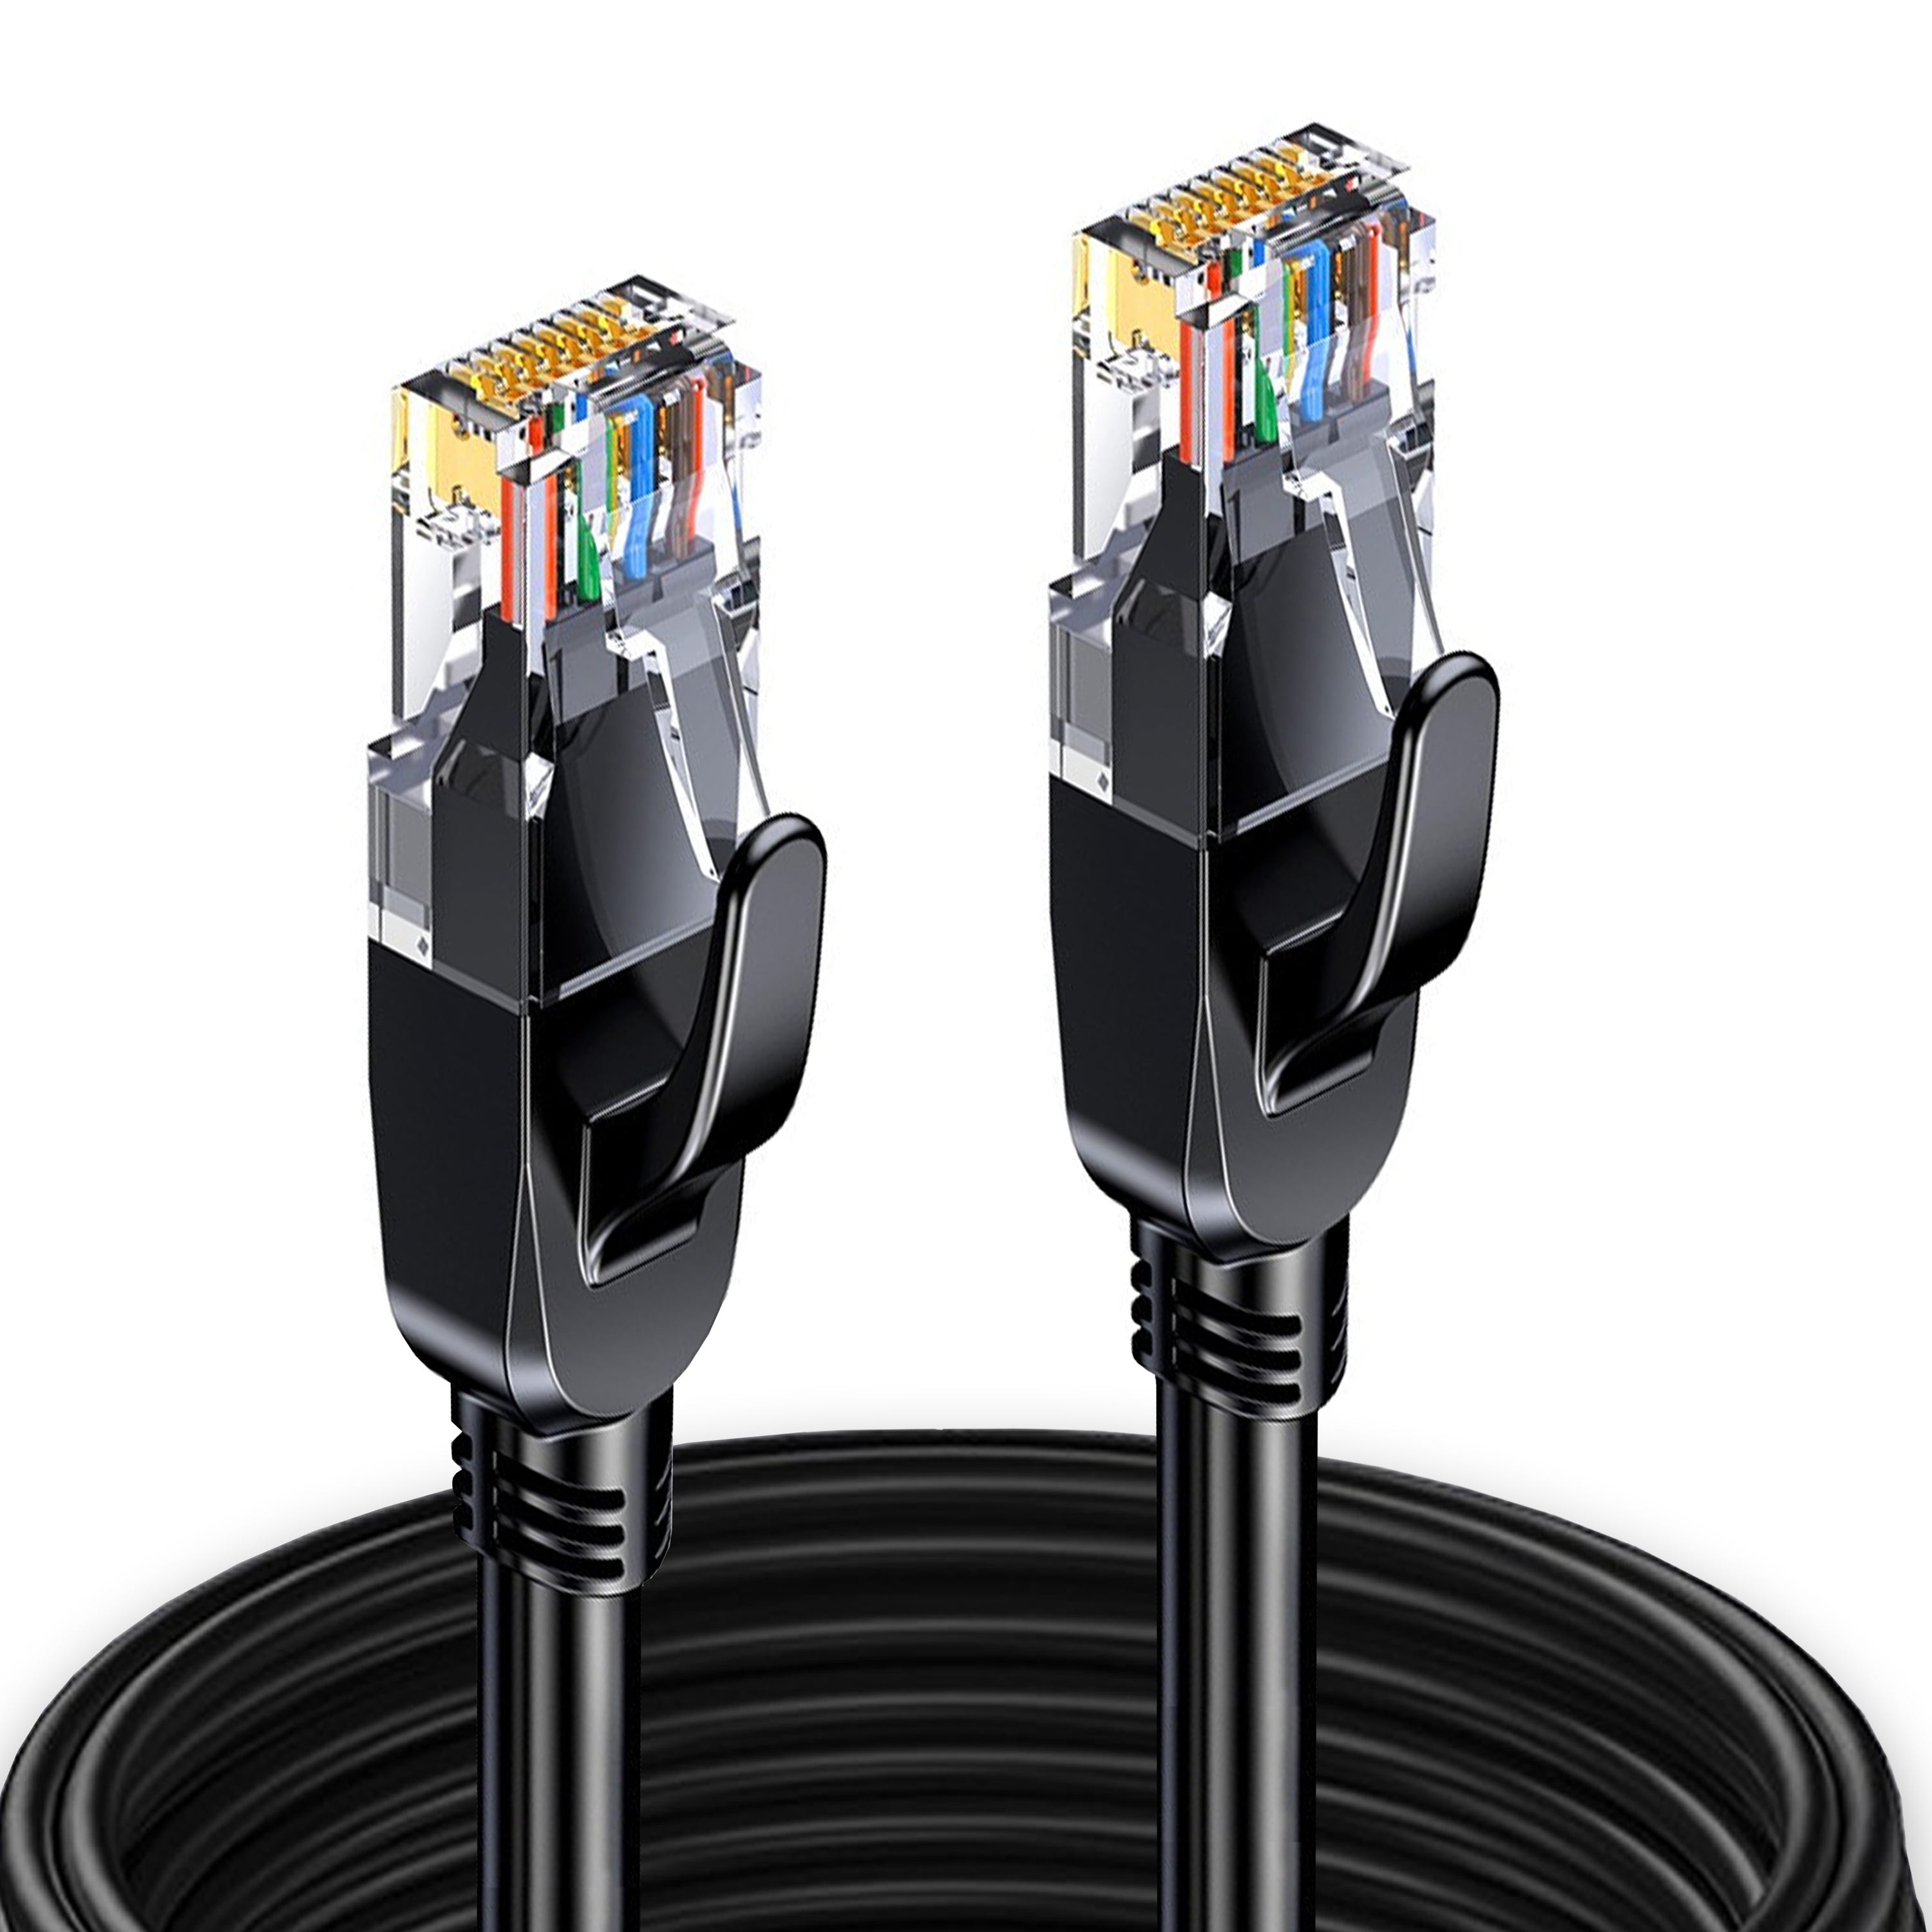 Elfcam® - 25m Cable Reseau Ethernet RJ45 Cat 7, Paire Torsadee Blindee SFTP  100% Cuivre, 6mm Diametre de Cable, 28 AWG Cable Rond  (25M)